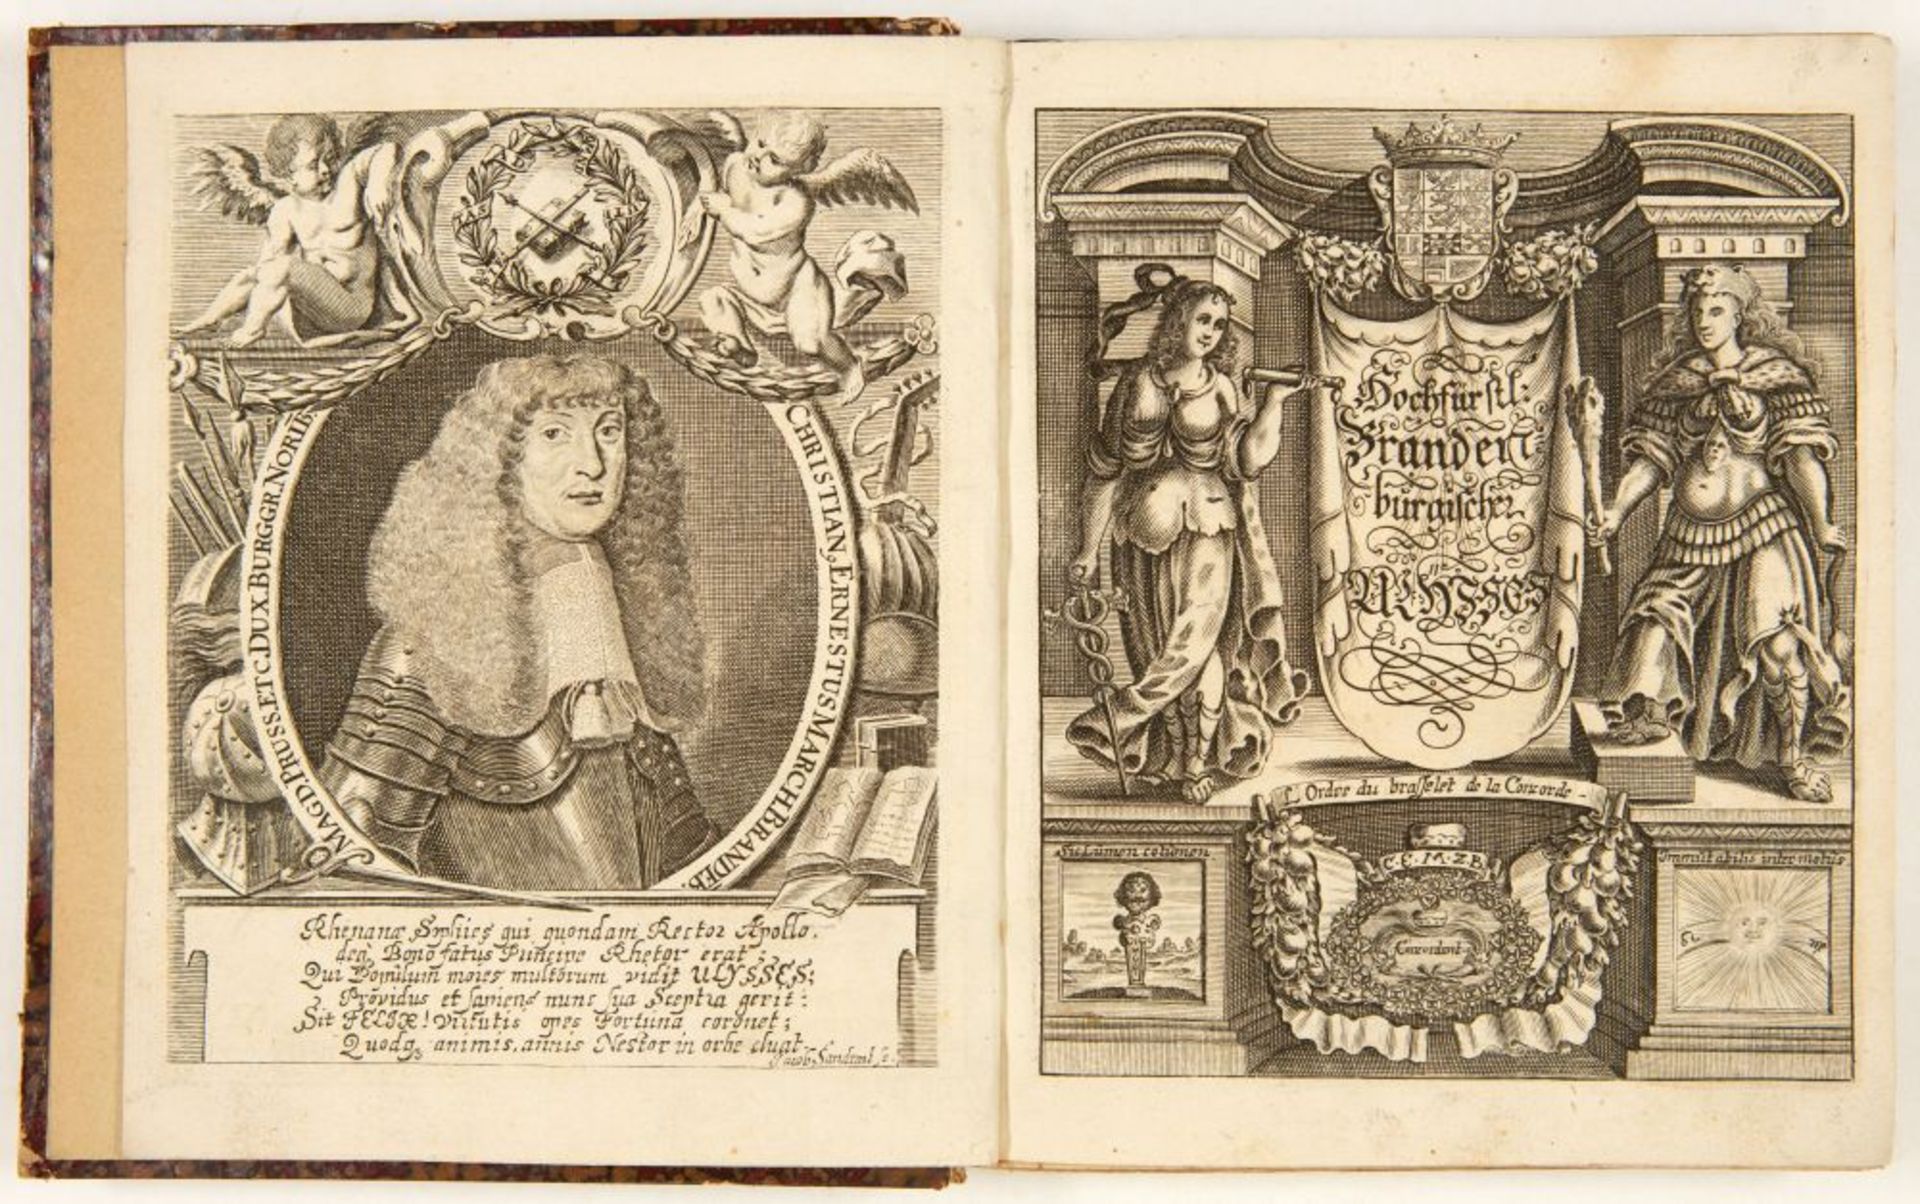 S. v. Birken, Hochfürstlicher Brandenburgischer Ulysses. Bayreuth 1668.